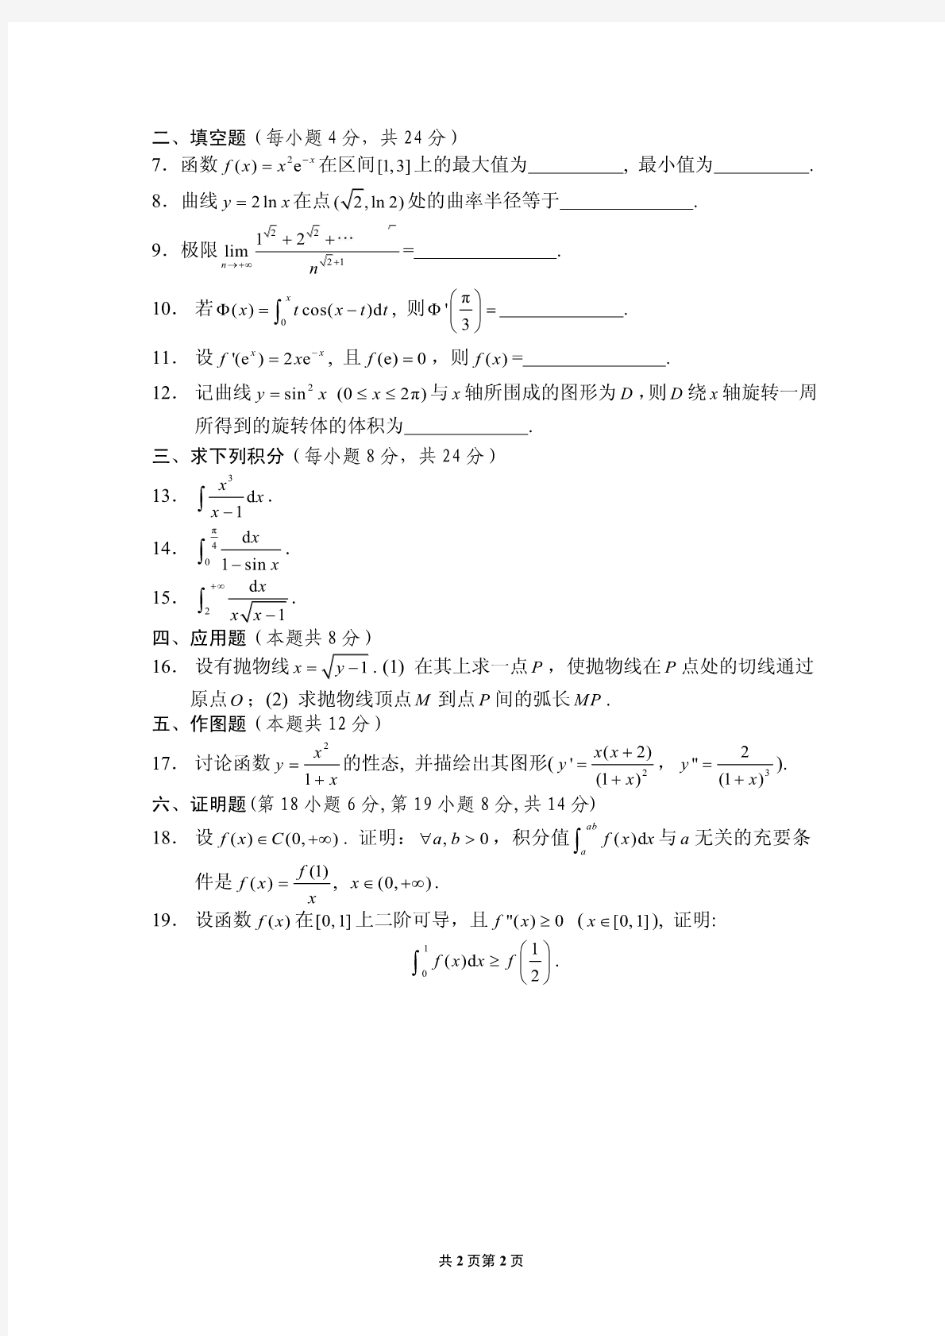 上海交通大学微积分(上册)教学试卷期终试卷